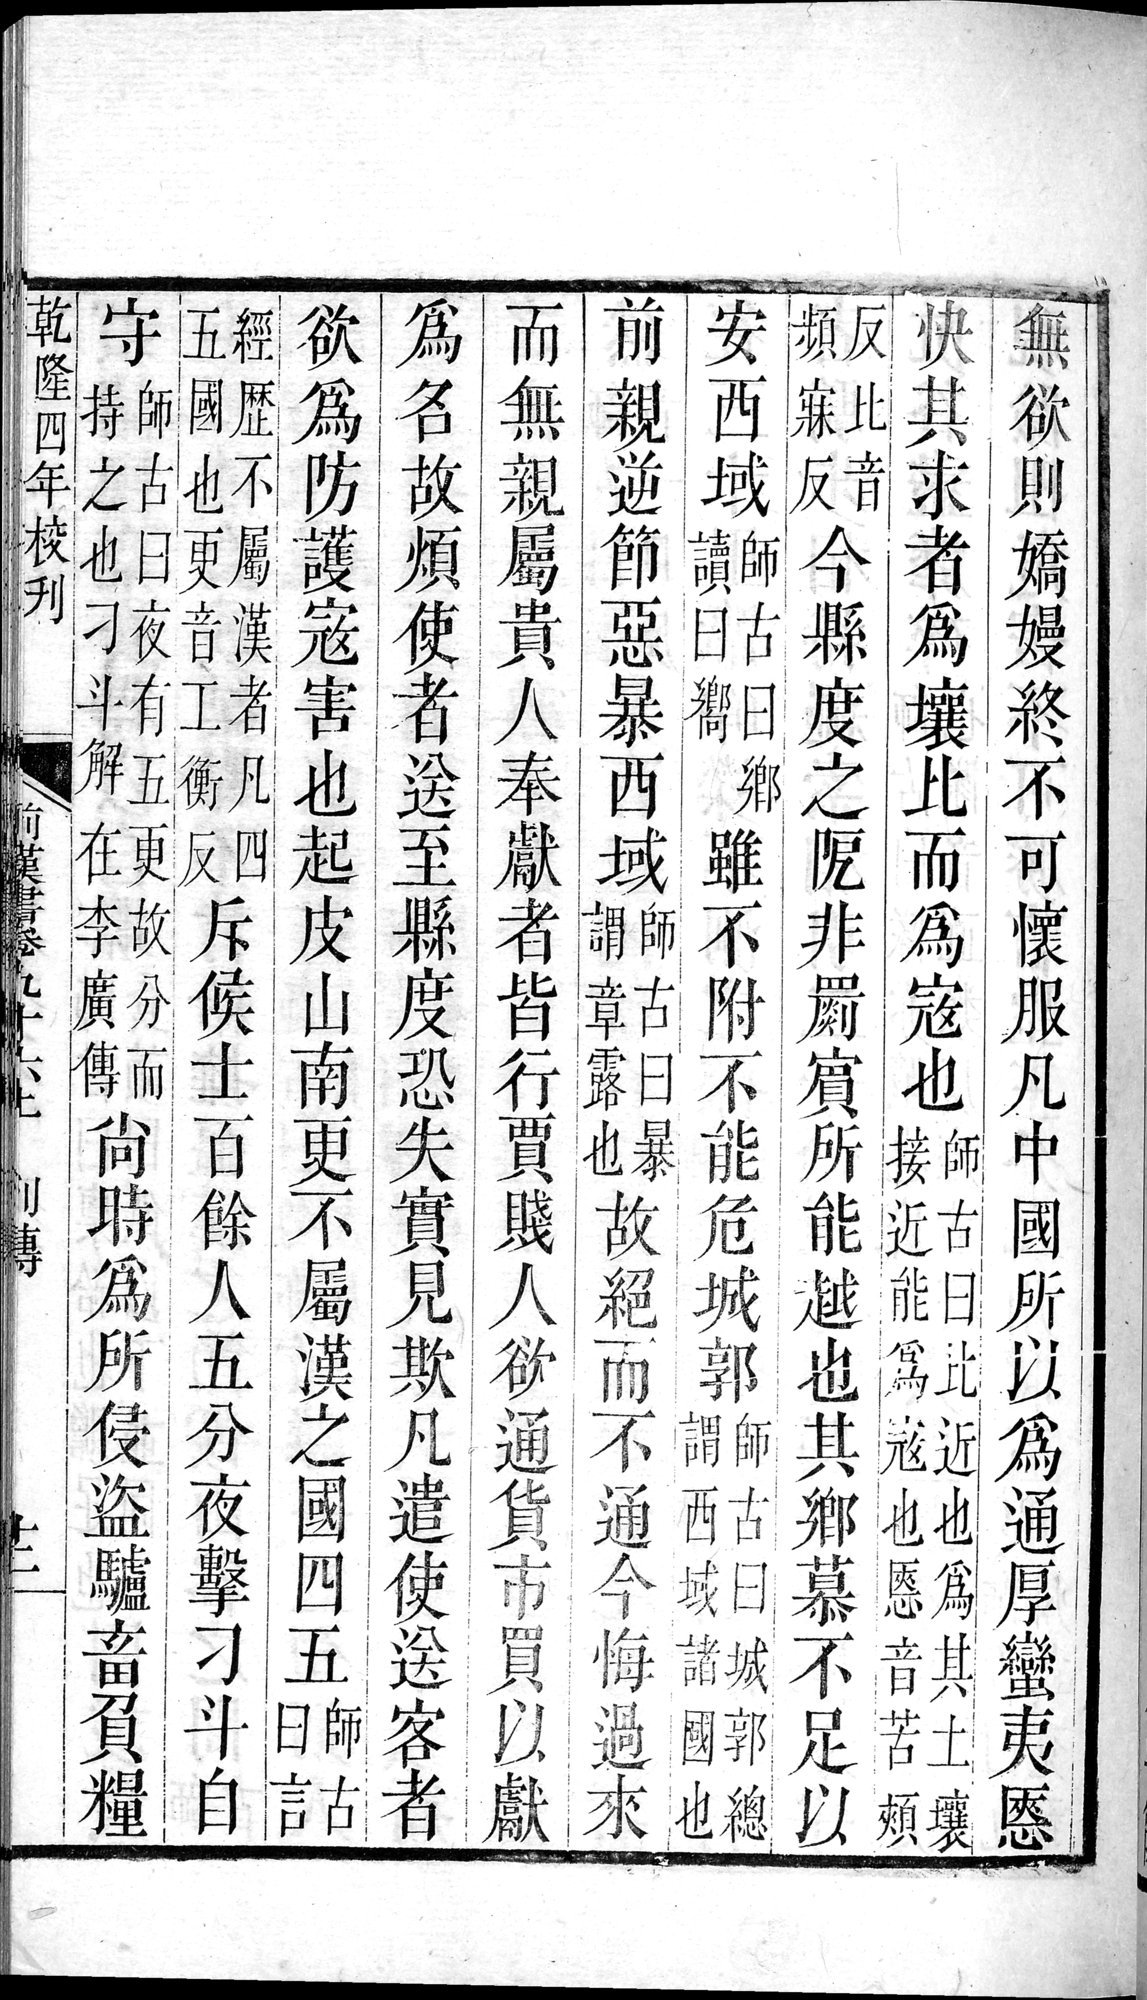 前漢書 : vol.96 top / Page 23 (Grayscale High Resolution Image)